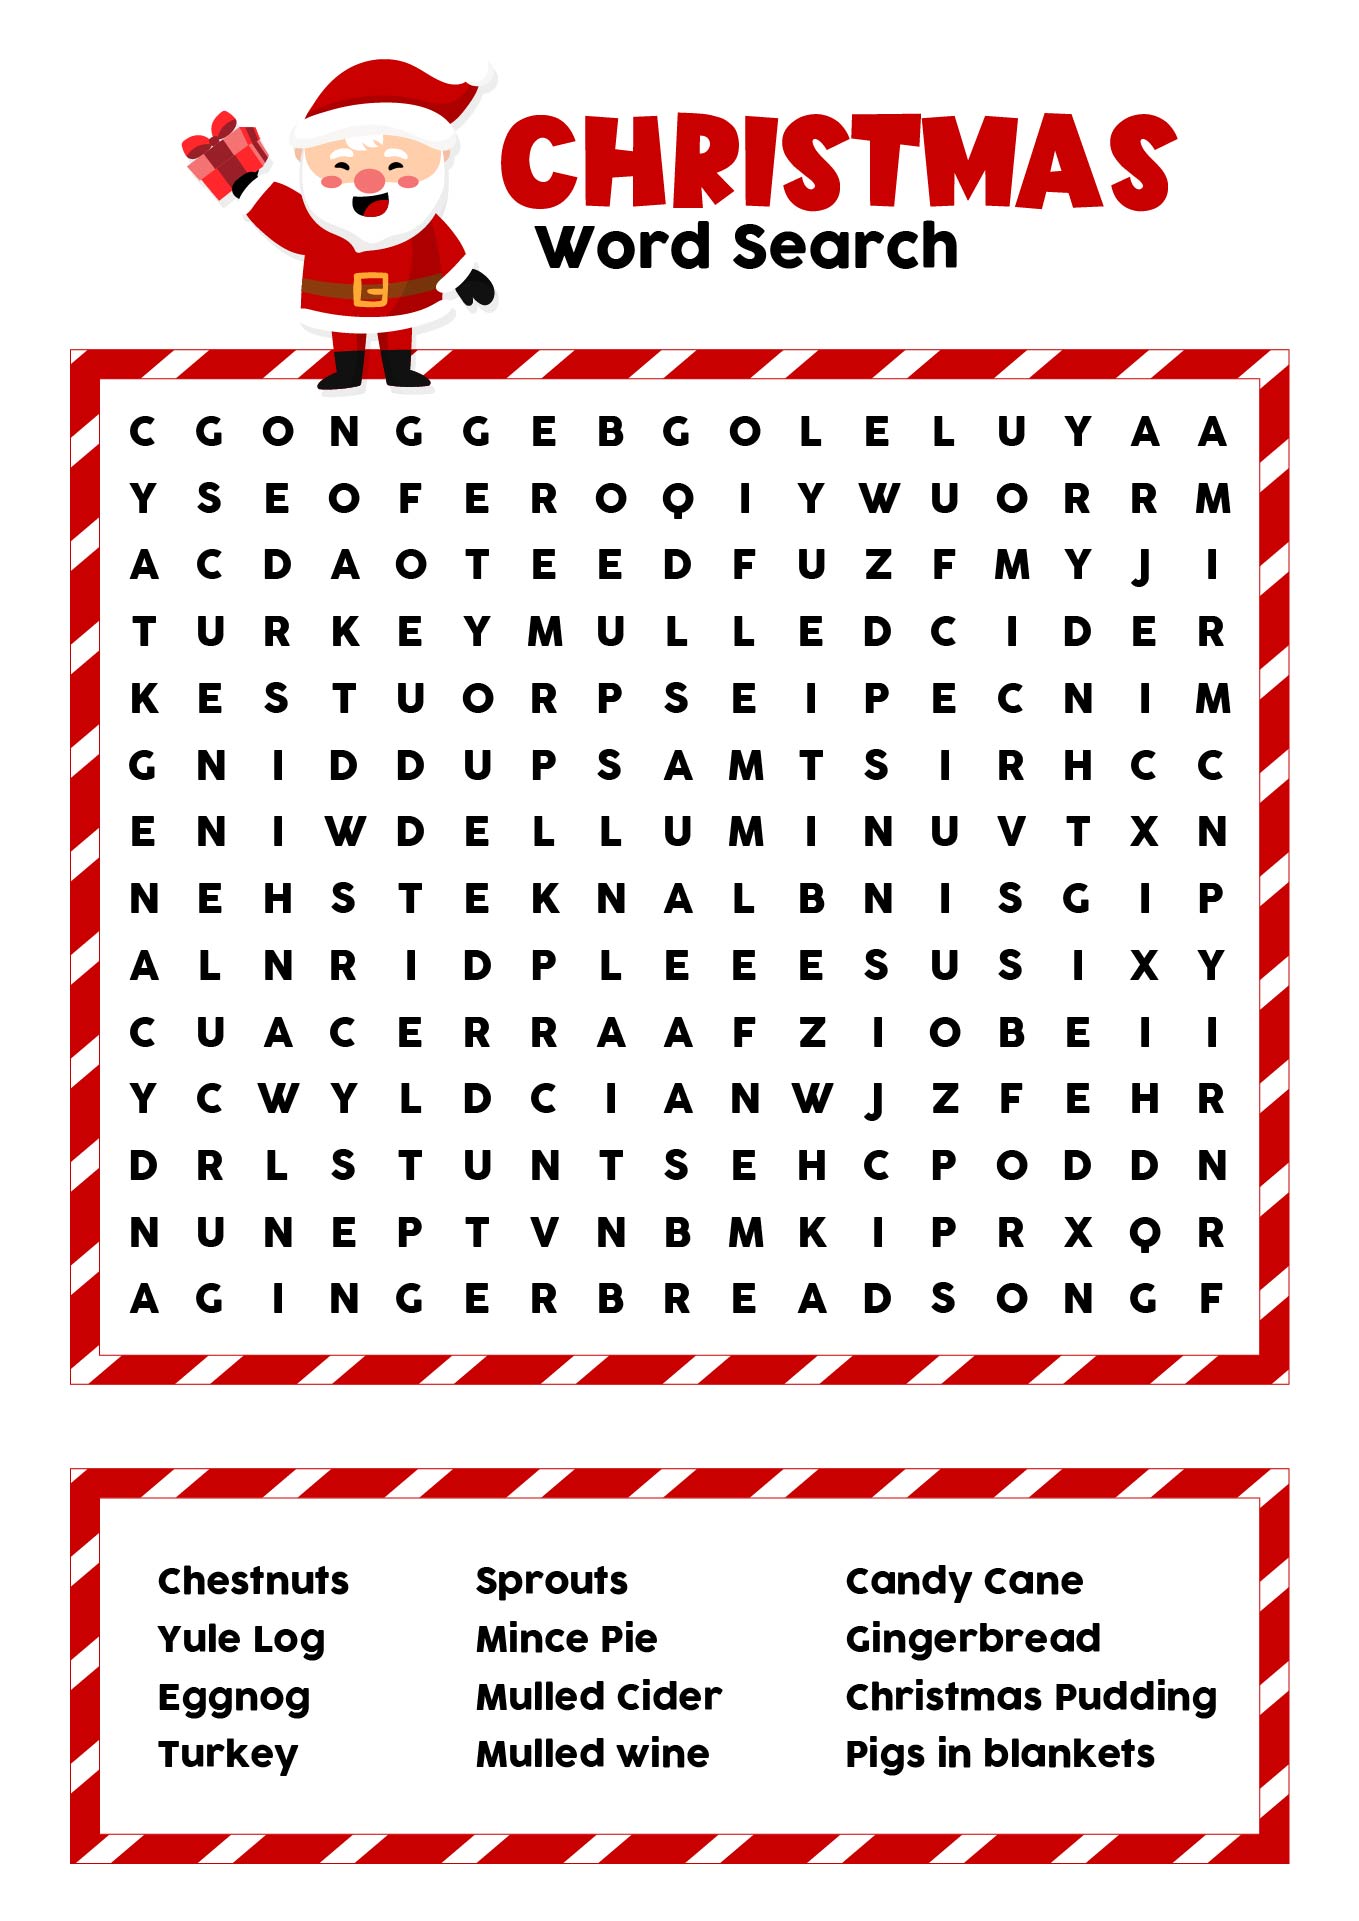 Christmas Foods Word Search Printable